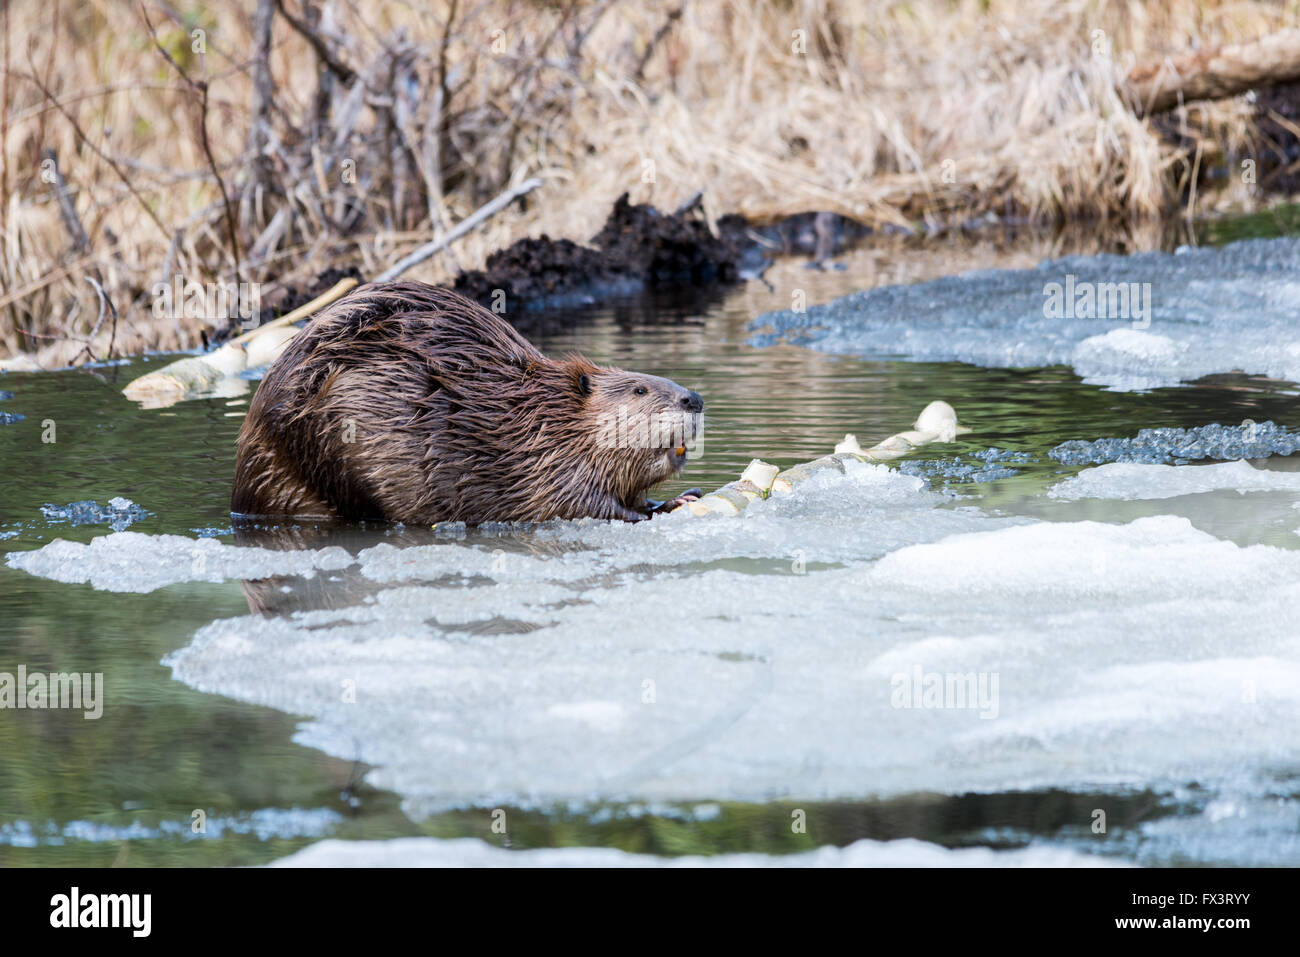 Un castor de grande taille de manger l'écorce de peuplier sur la glace dans un étang de castors Banque D'Images